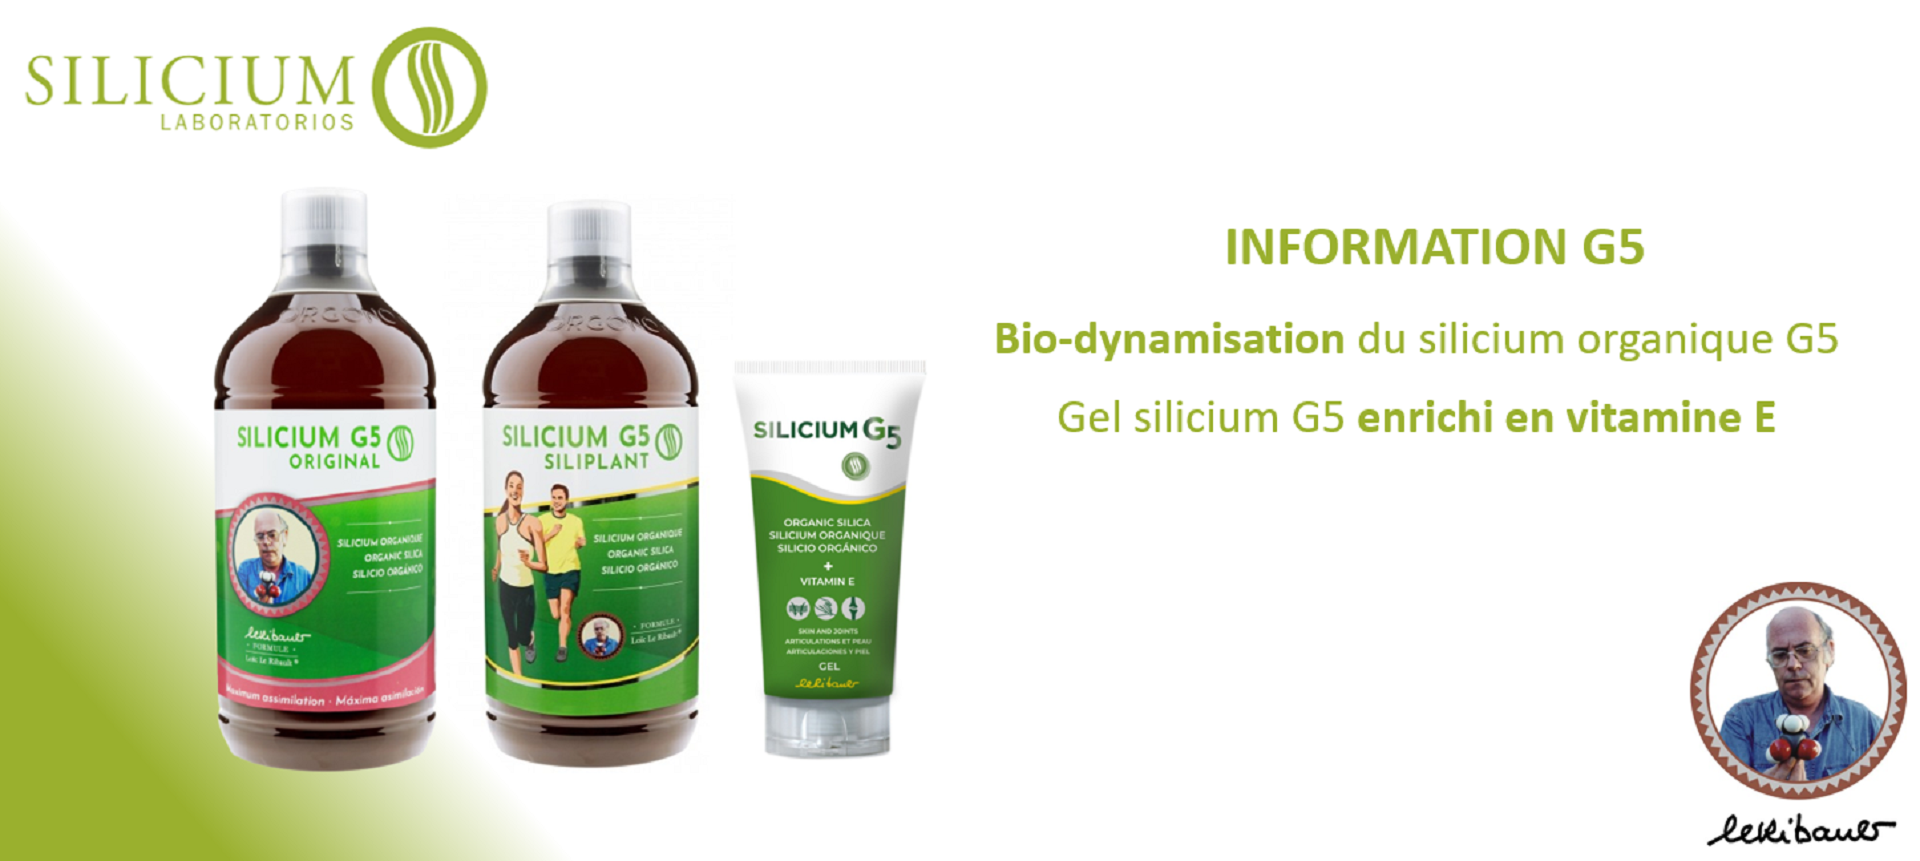 Silicium G5